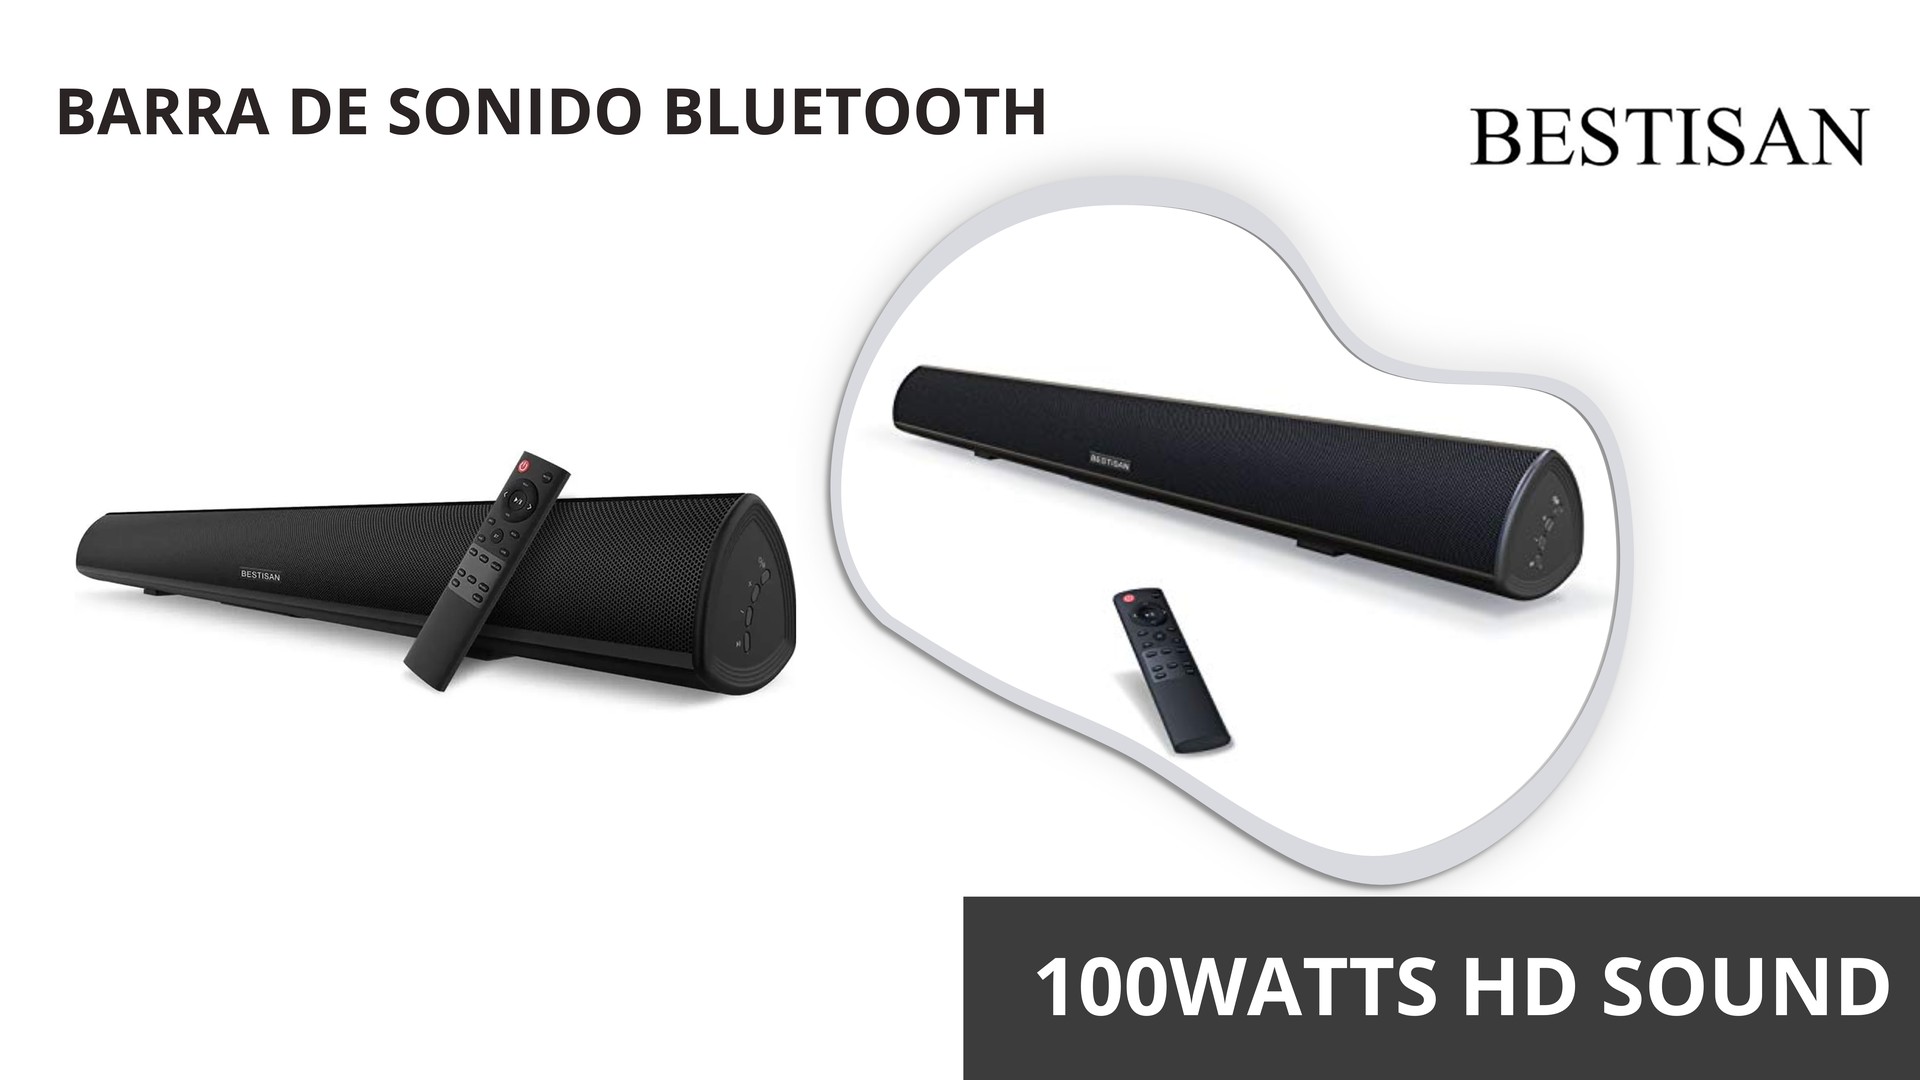 camaras y audio - Barra de sonido Bluetooth de 100Watts, Salida Optica y Estereo Para TV y Otros.